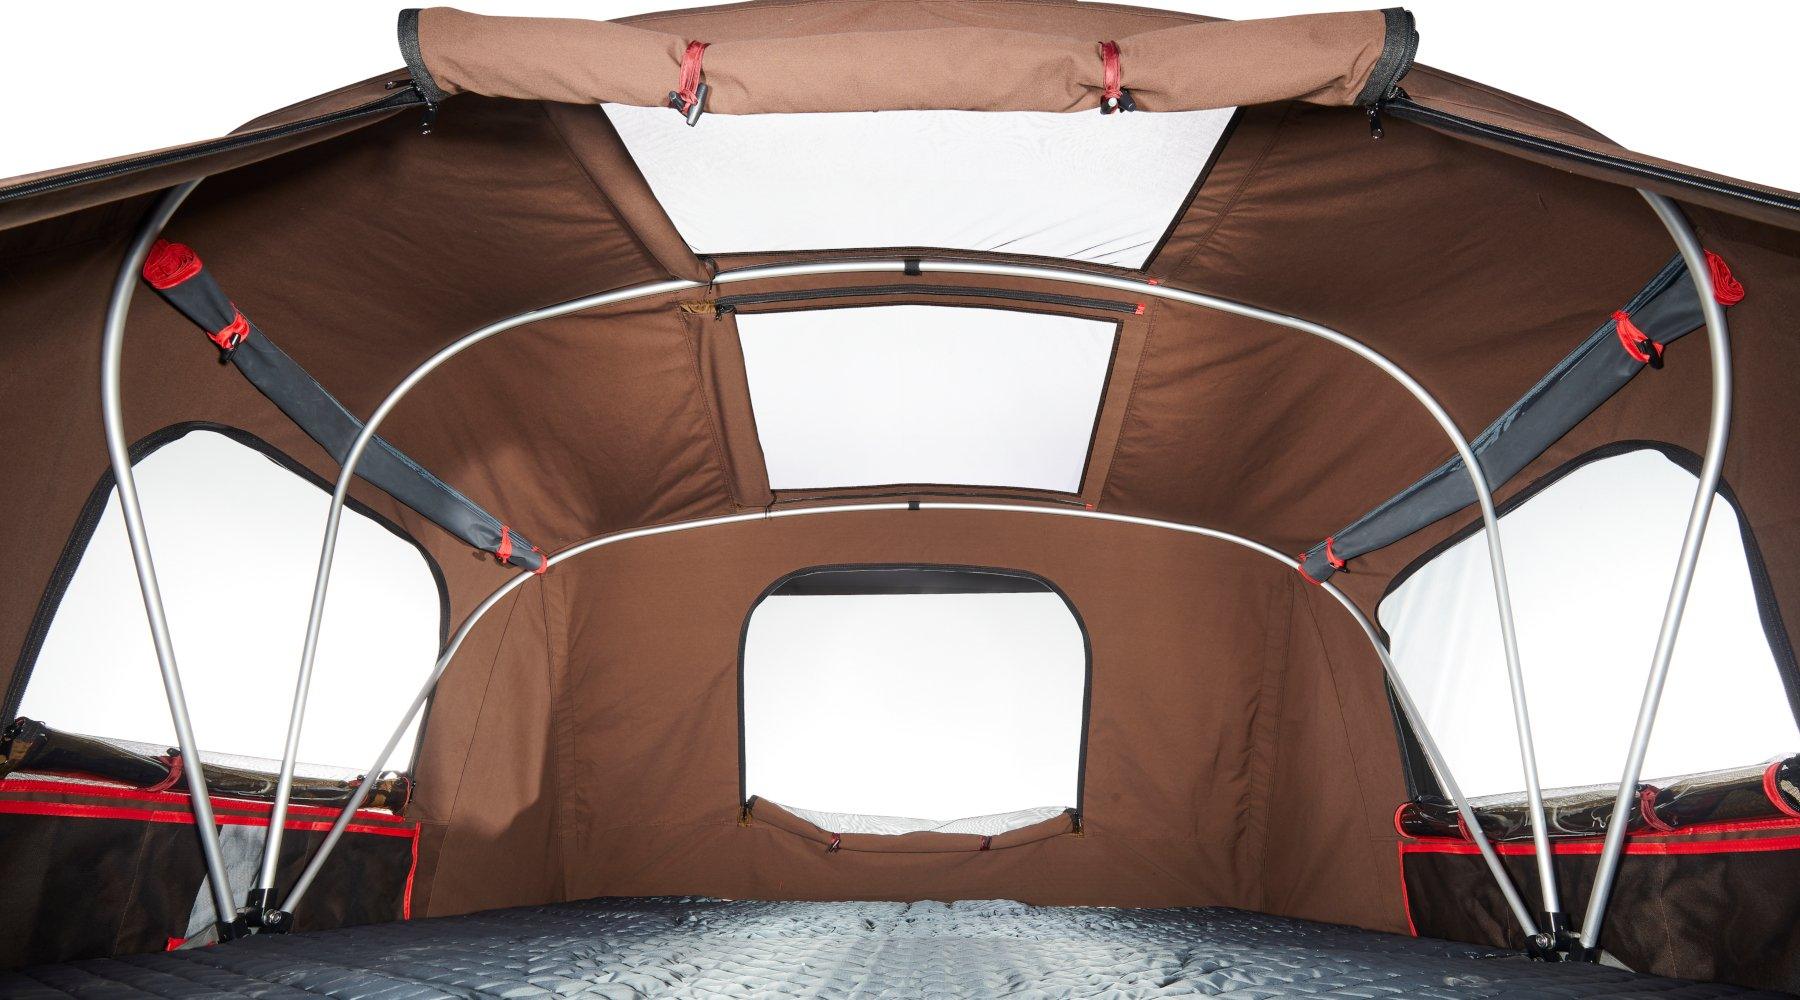 Четырехместная палатка на крышу автомобиля